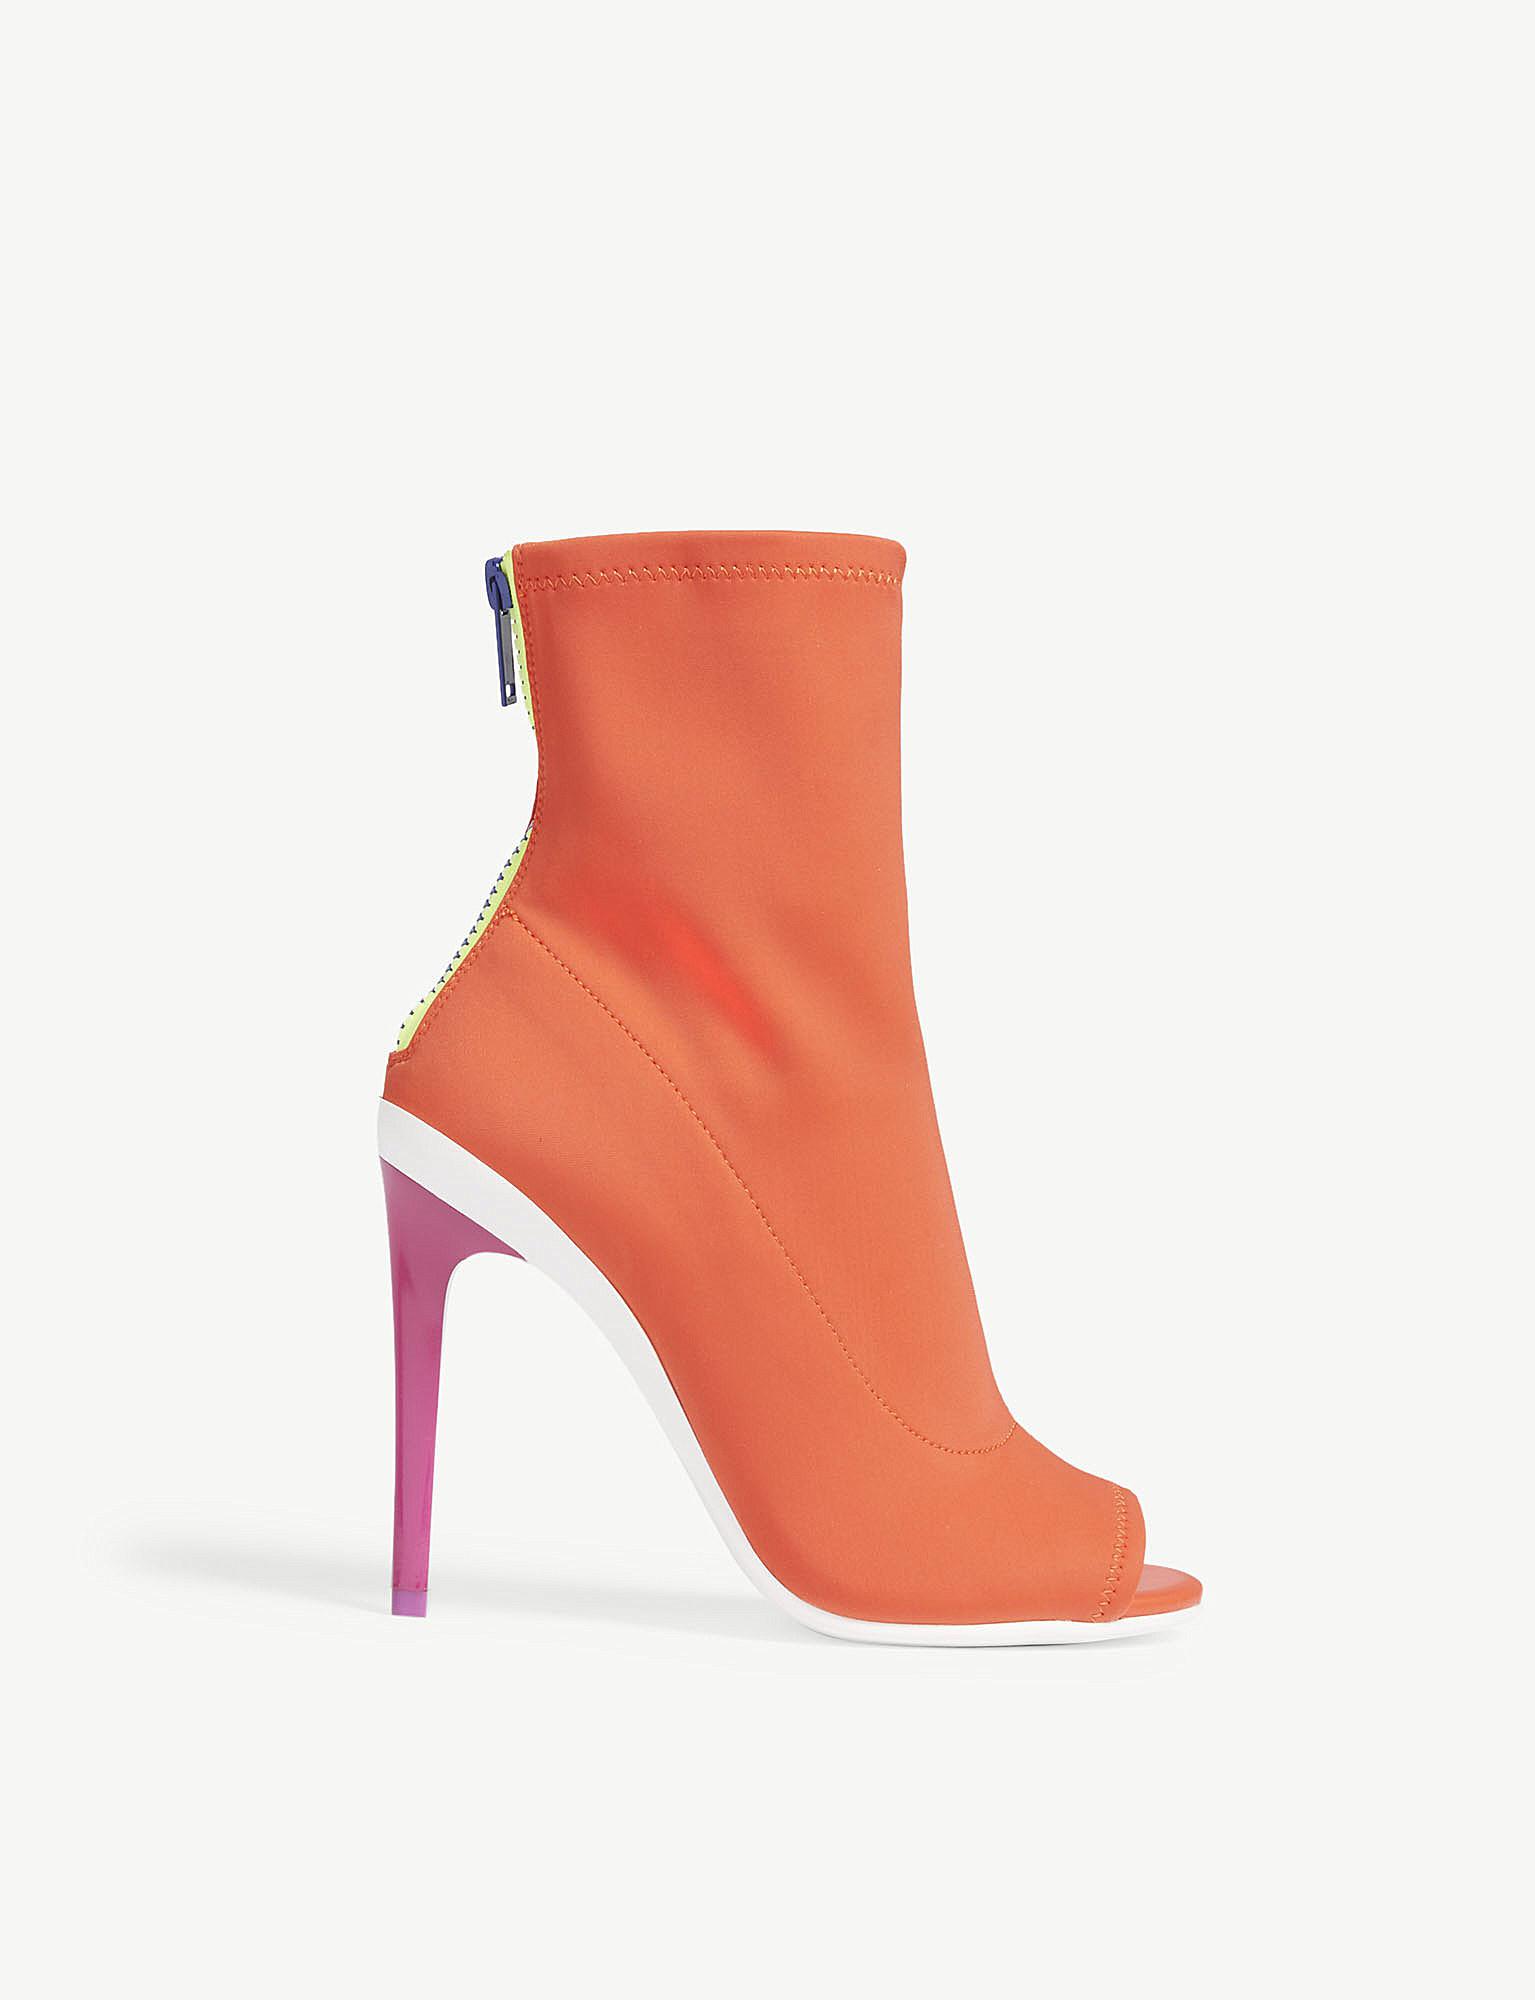 ALDO Ulyssia Peep Toe Shoe in Orange - Lyst